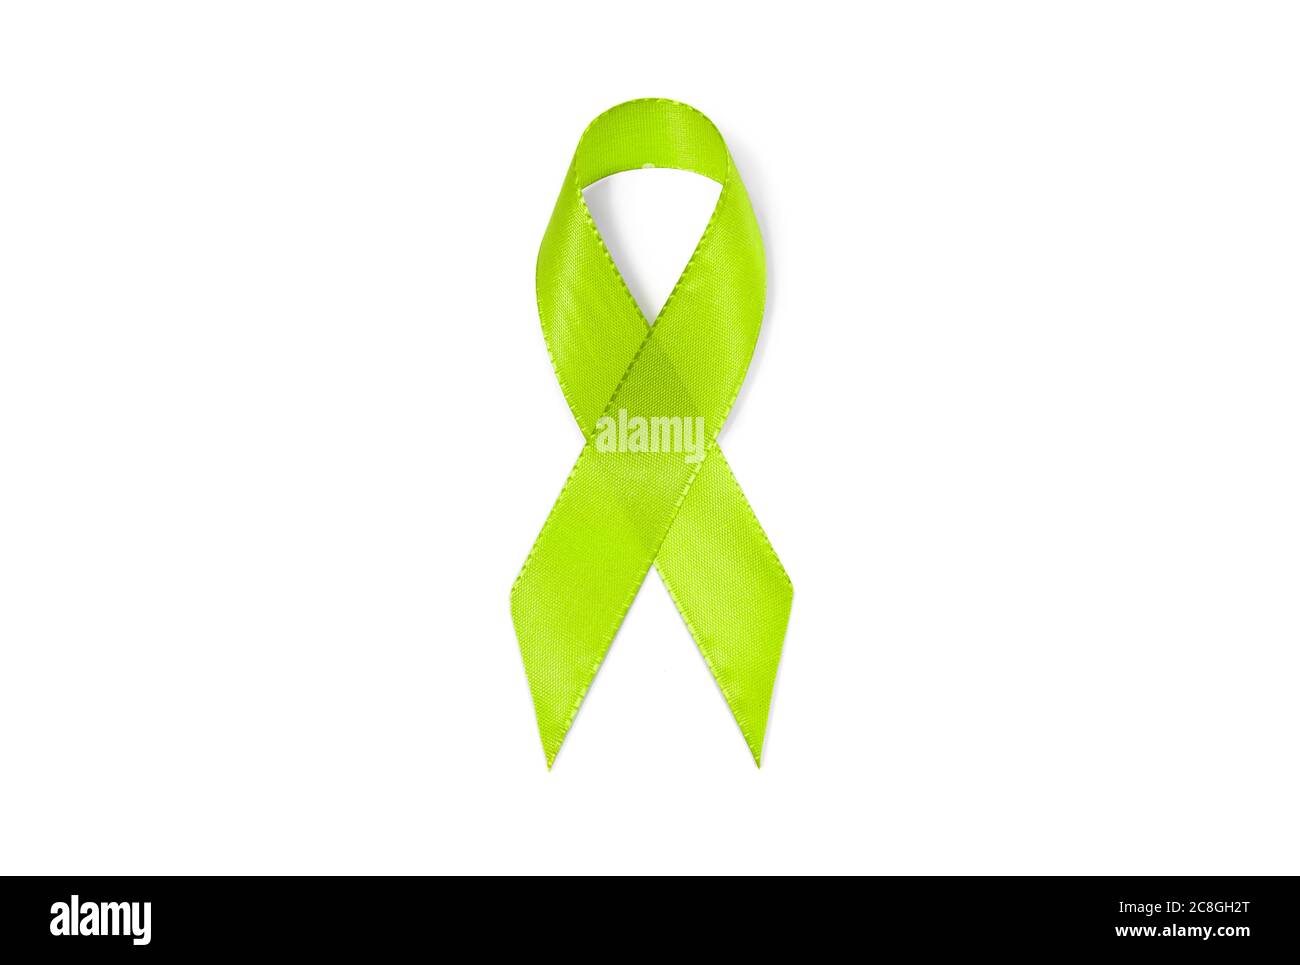 Symbole image ruban de sensibilisation vert lime, vert clair, ruban, signe de solidarité, lymphome non hodgkinien, maladie de Lyme, dépression Banque D'Images